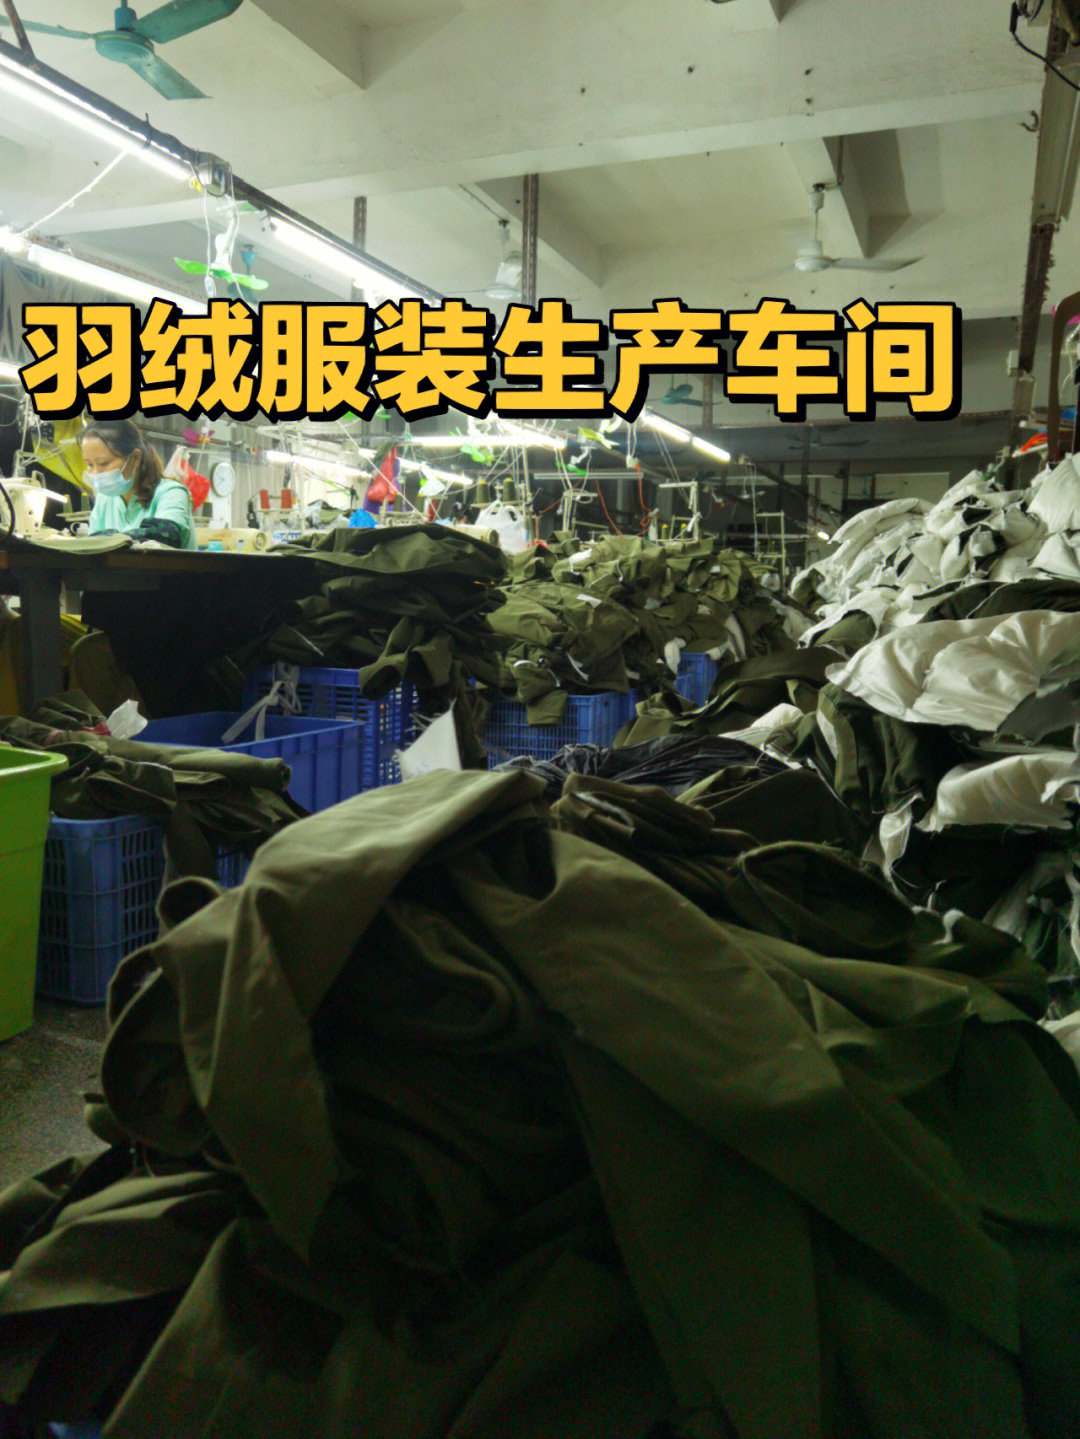 服装加工厂本厂经营10年 正宗广东清远人目前工厂占地面积1000平方